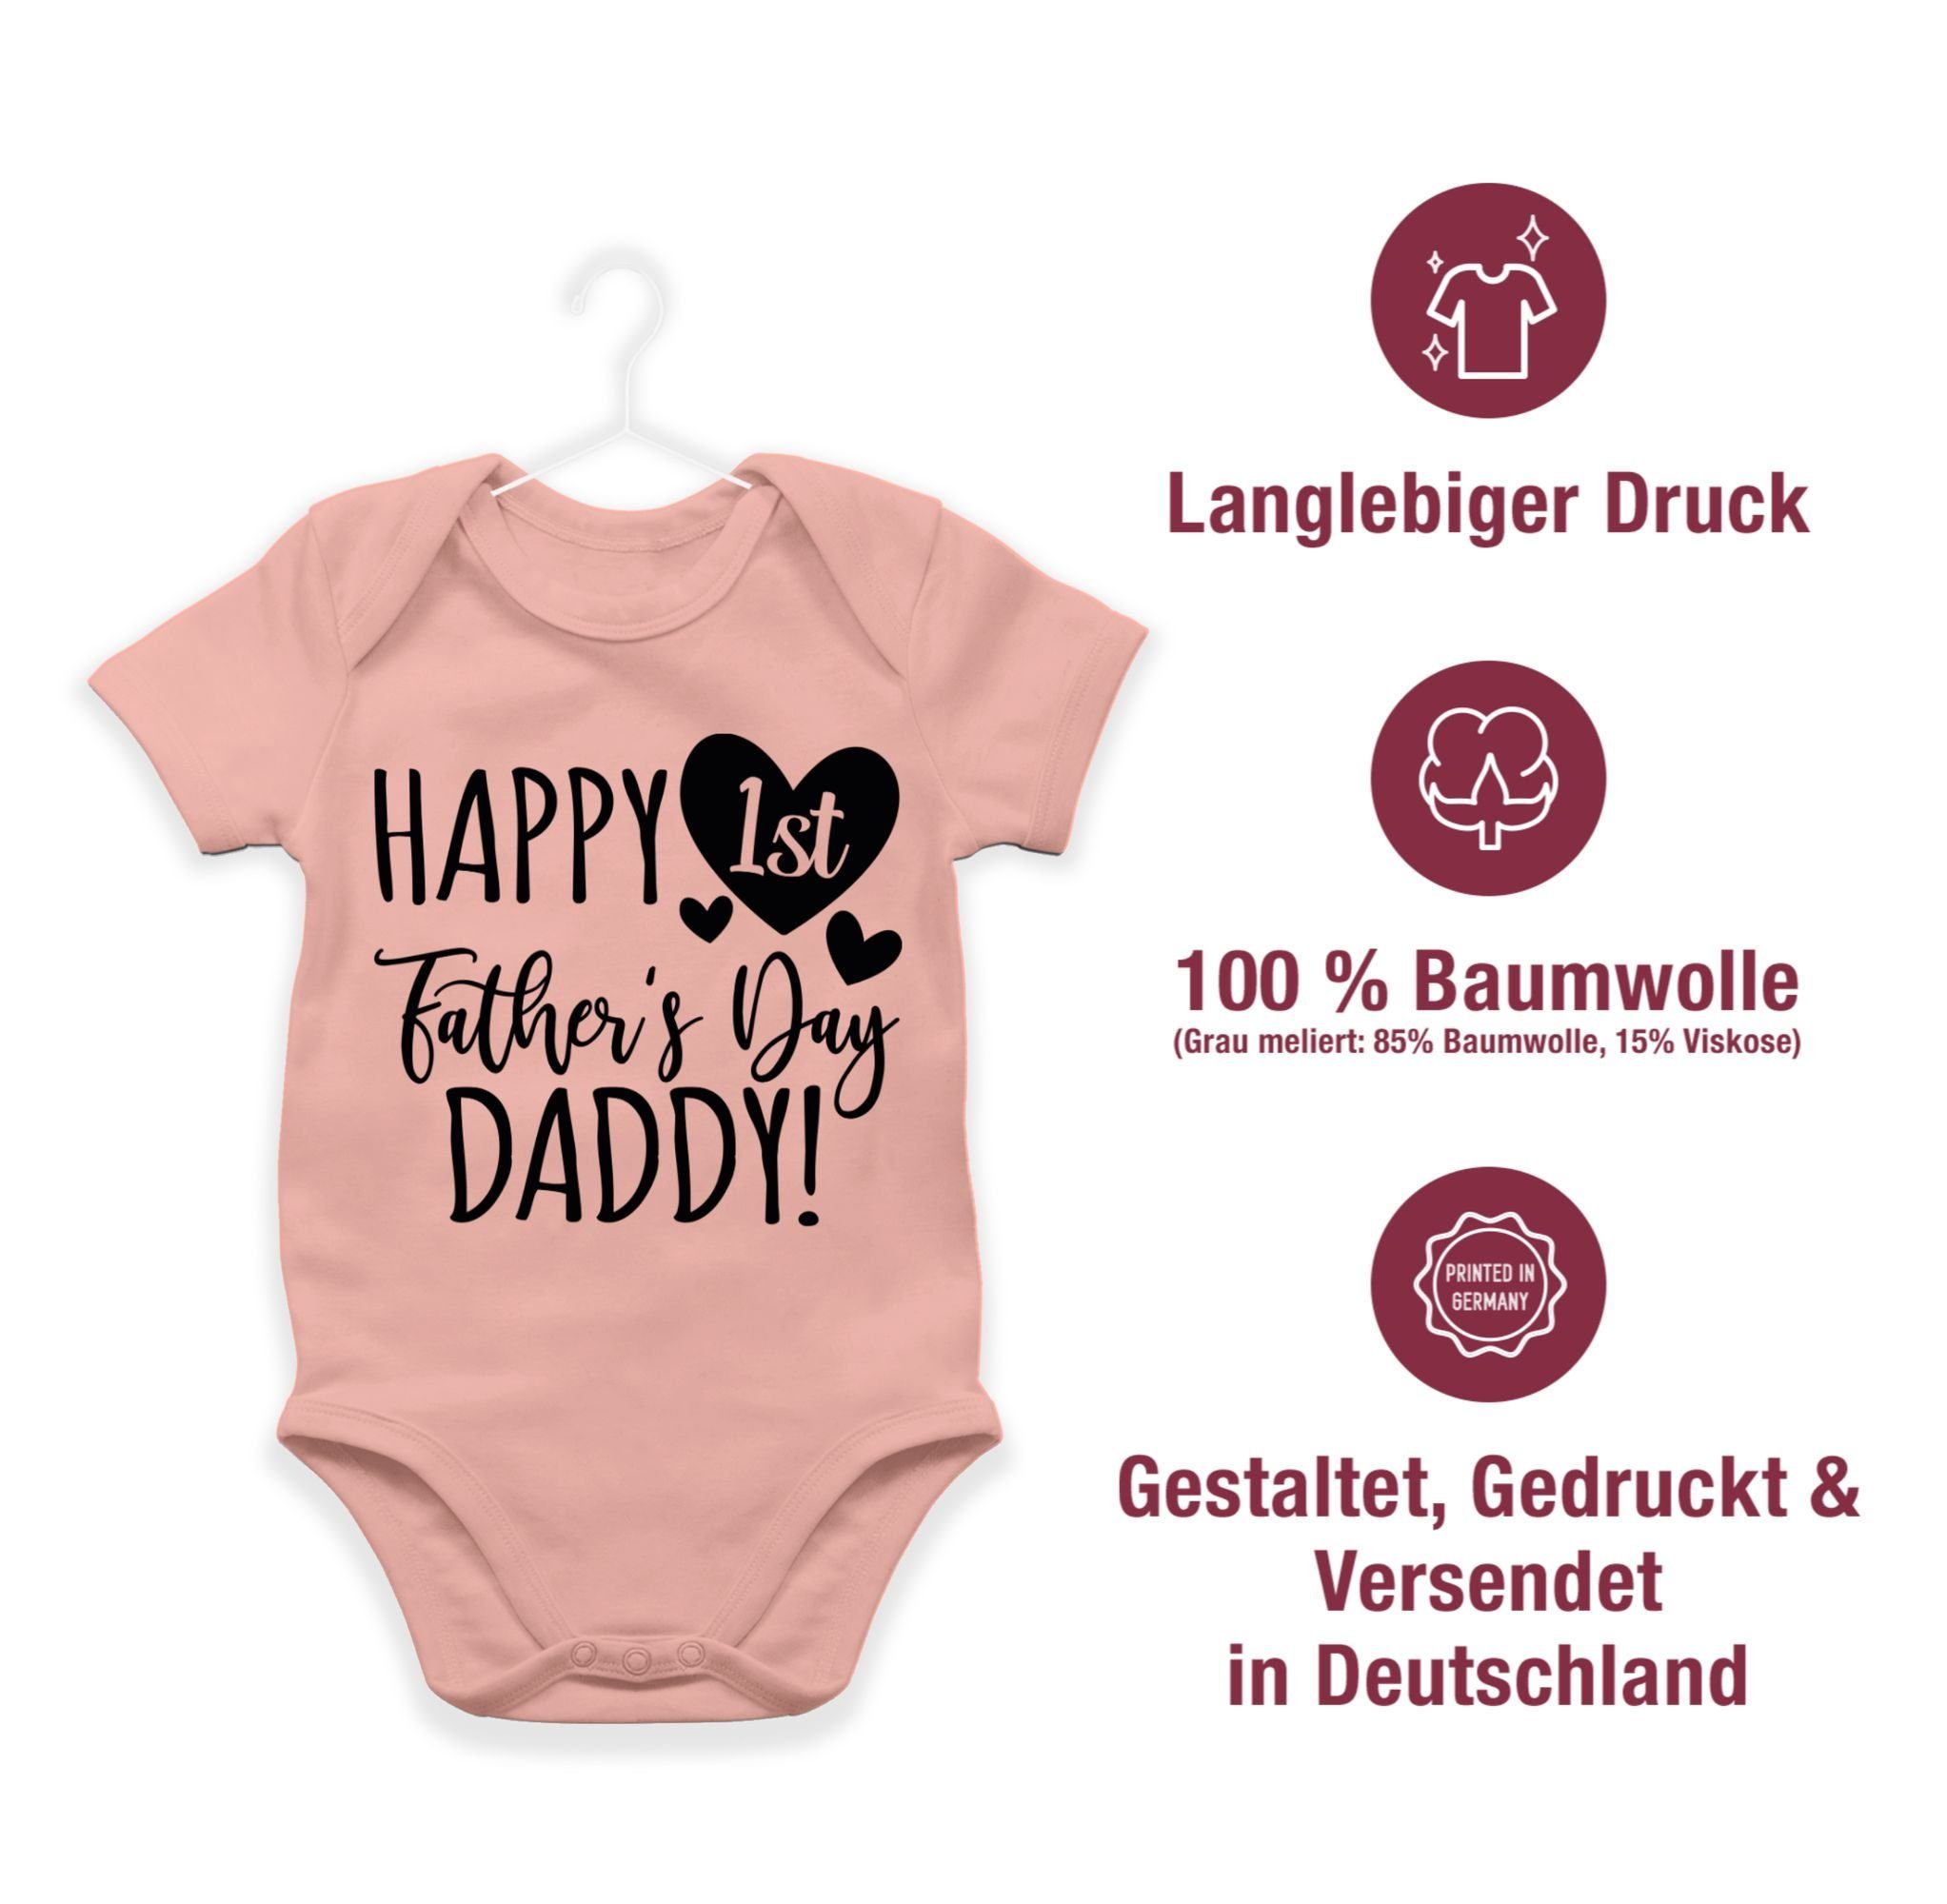 Father's Geschenk 1 Vatertag Happy 1st - Baby Shirtbody Shirtracer Day Daddy! Babyrosa schwarz